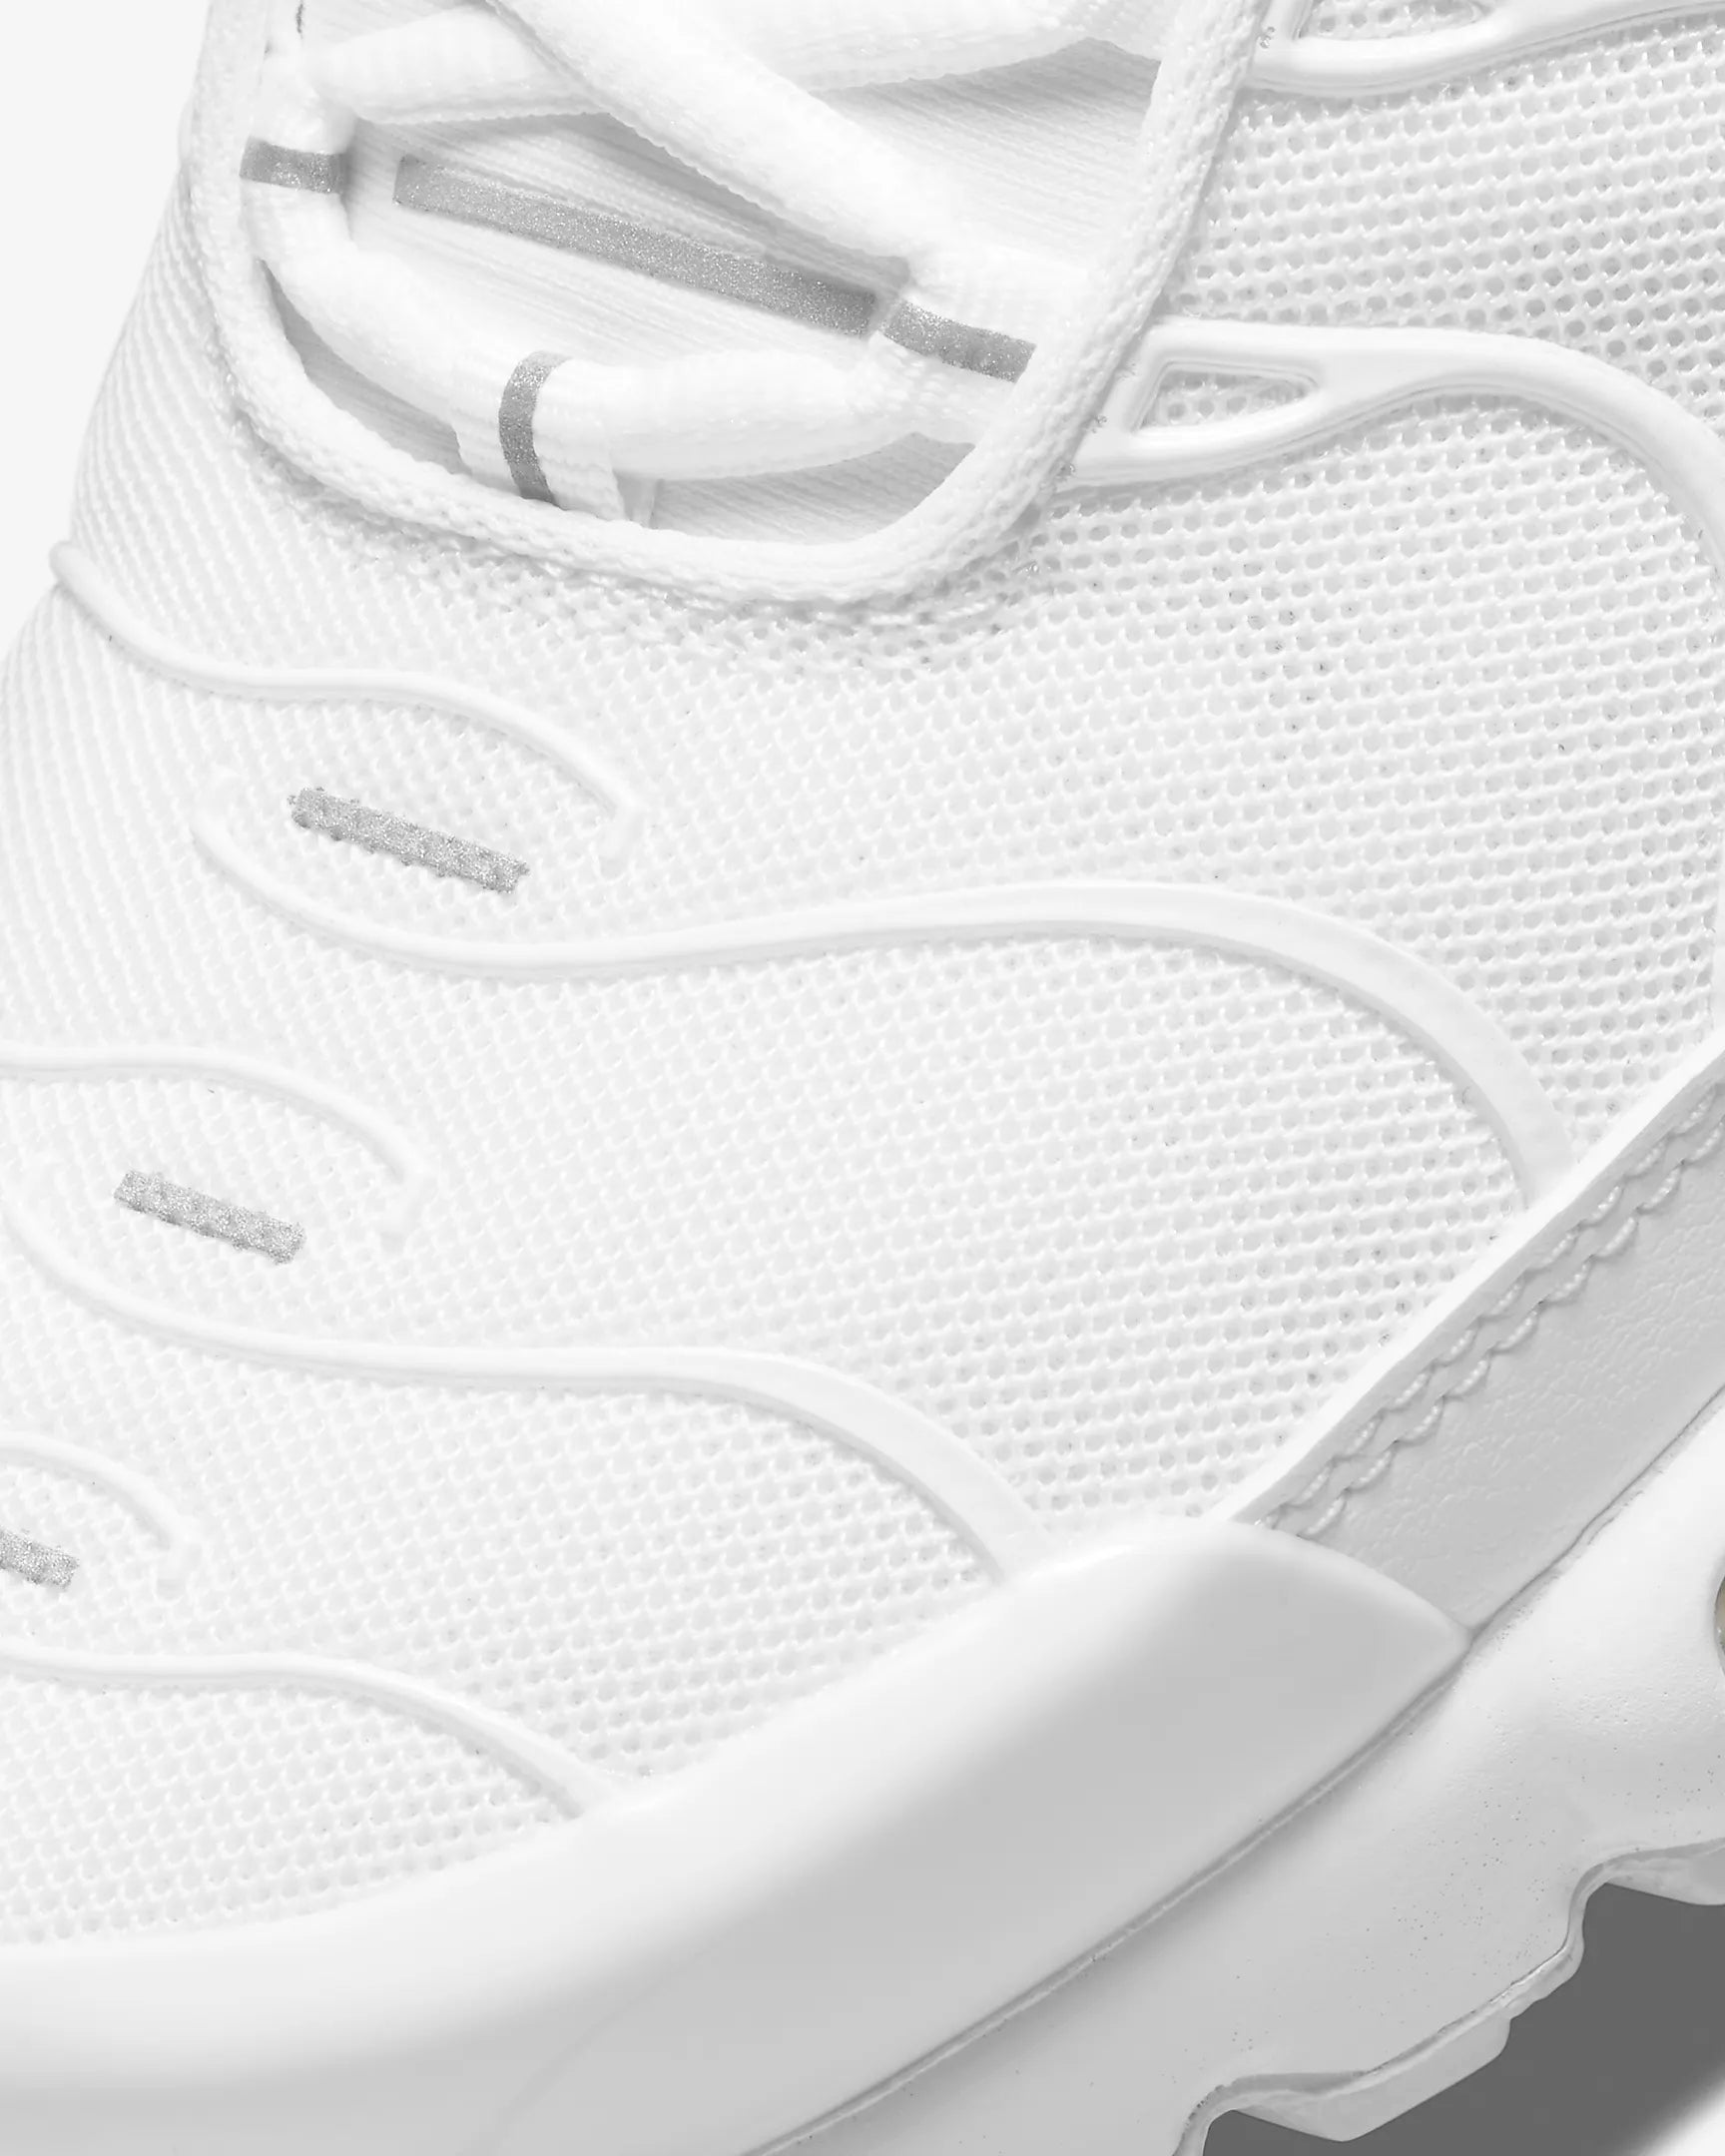 Nike Air Max+ Tn  "Pure White"